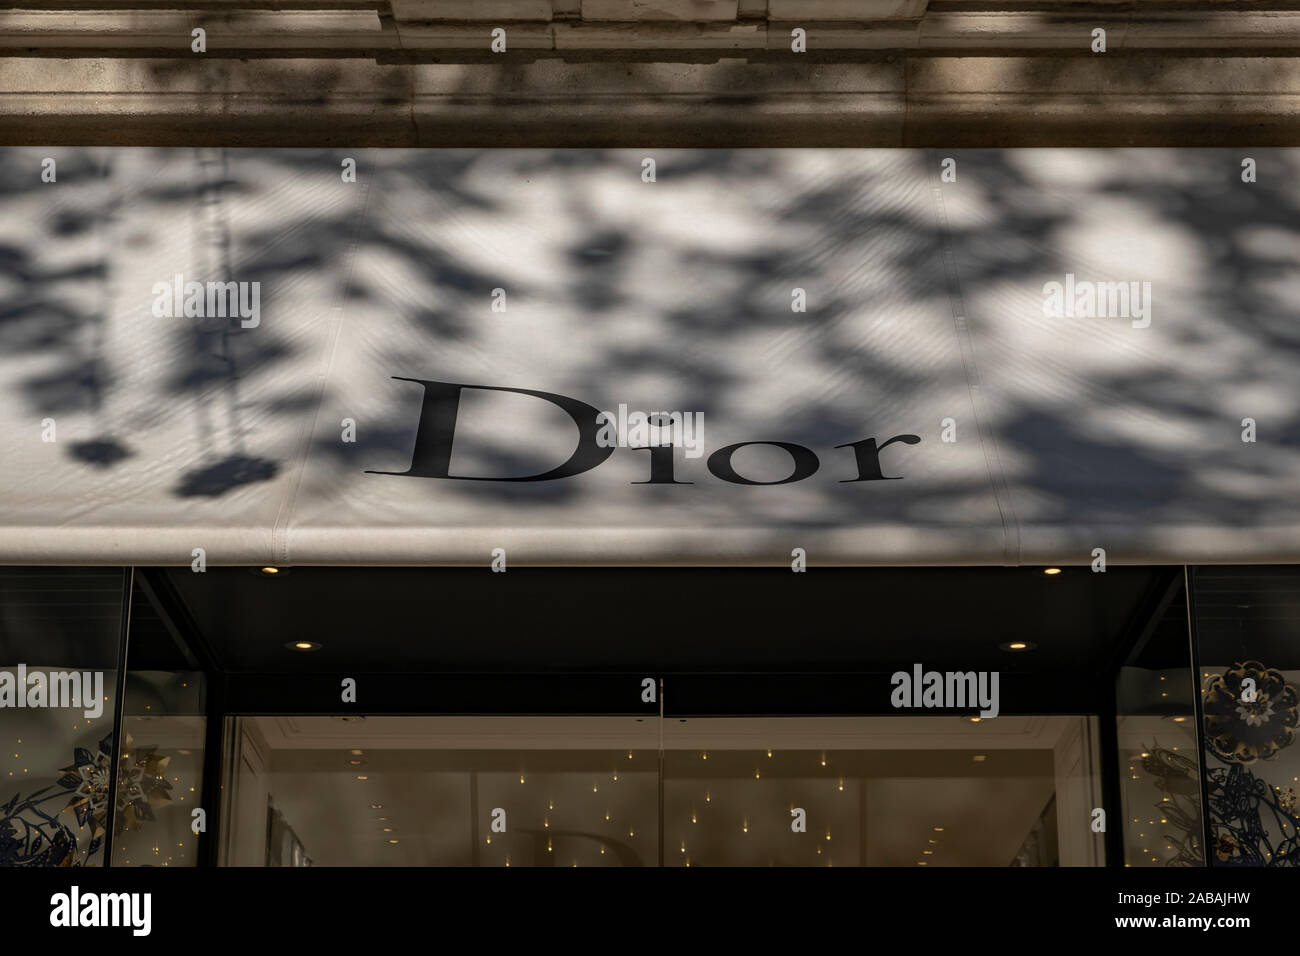 La Dior logo, un lusso francese rivenditore di abbigliamento, visto al  Passeig de Gràcia store.Un viale di poco più di un chilometro, il Passeig  de Gràcia store riunisce i più importanti marchi